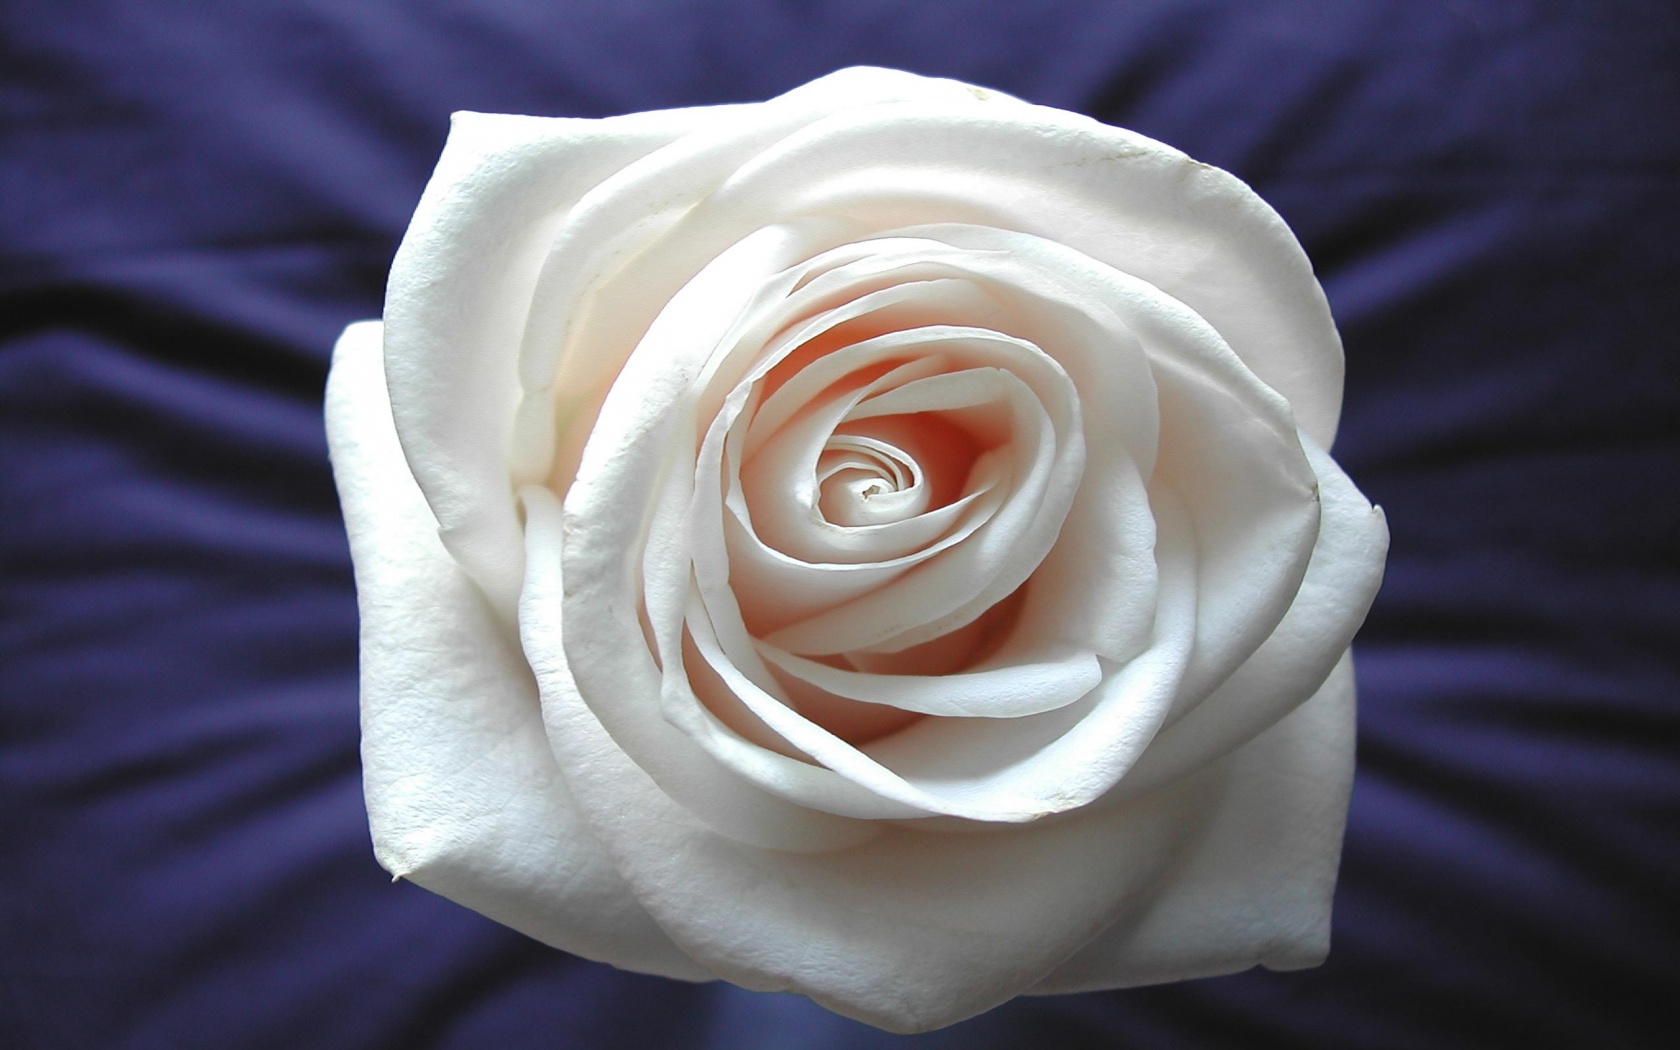 White Rose Desktop Wallpaper - Wallpaper, High Definition, High Quality, Widescreen